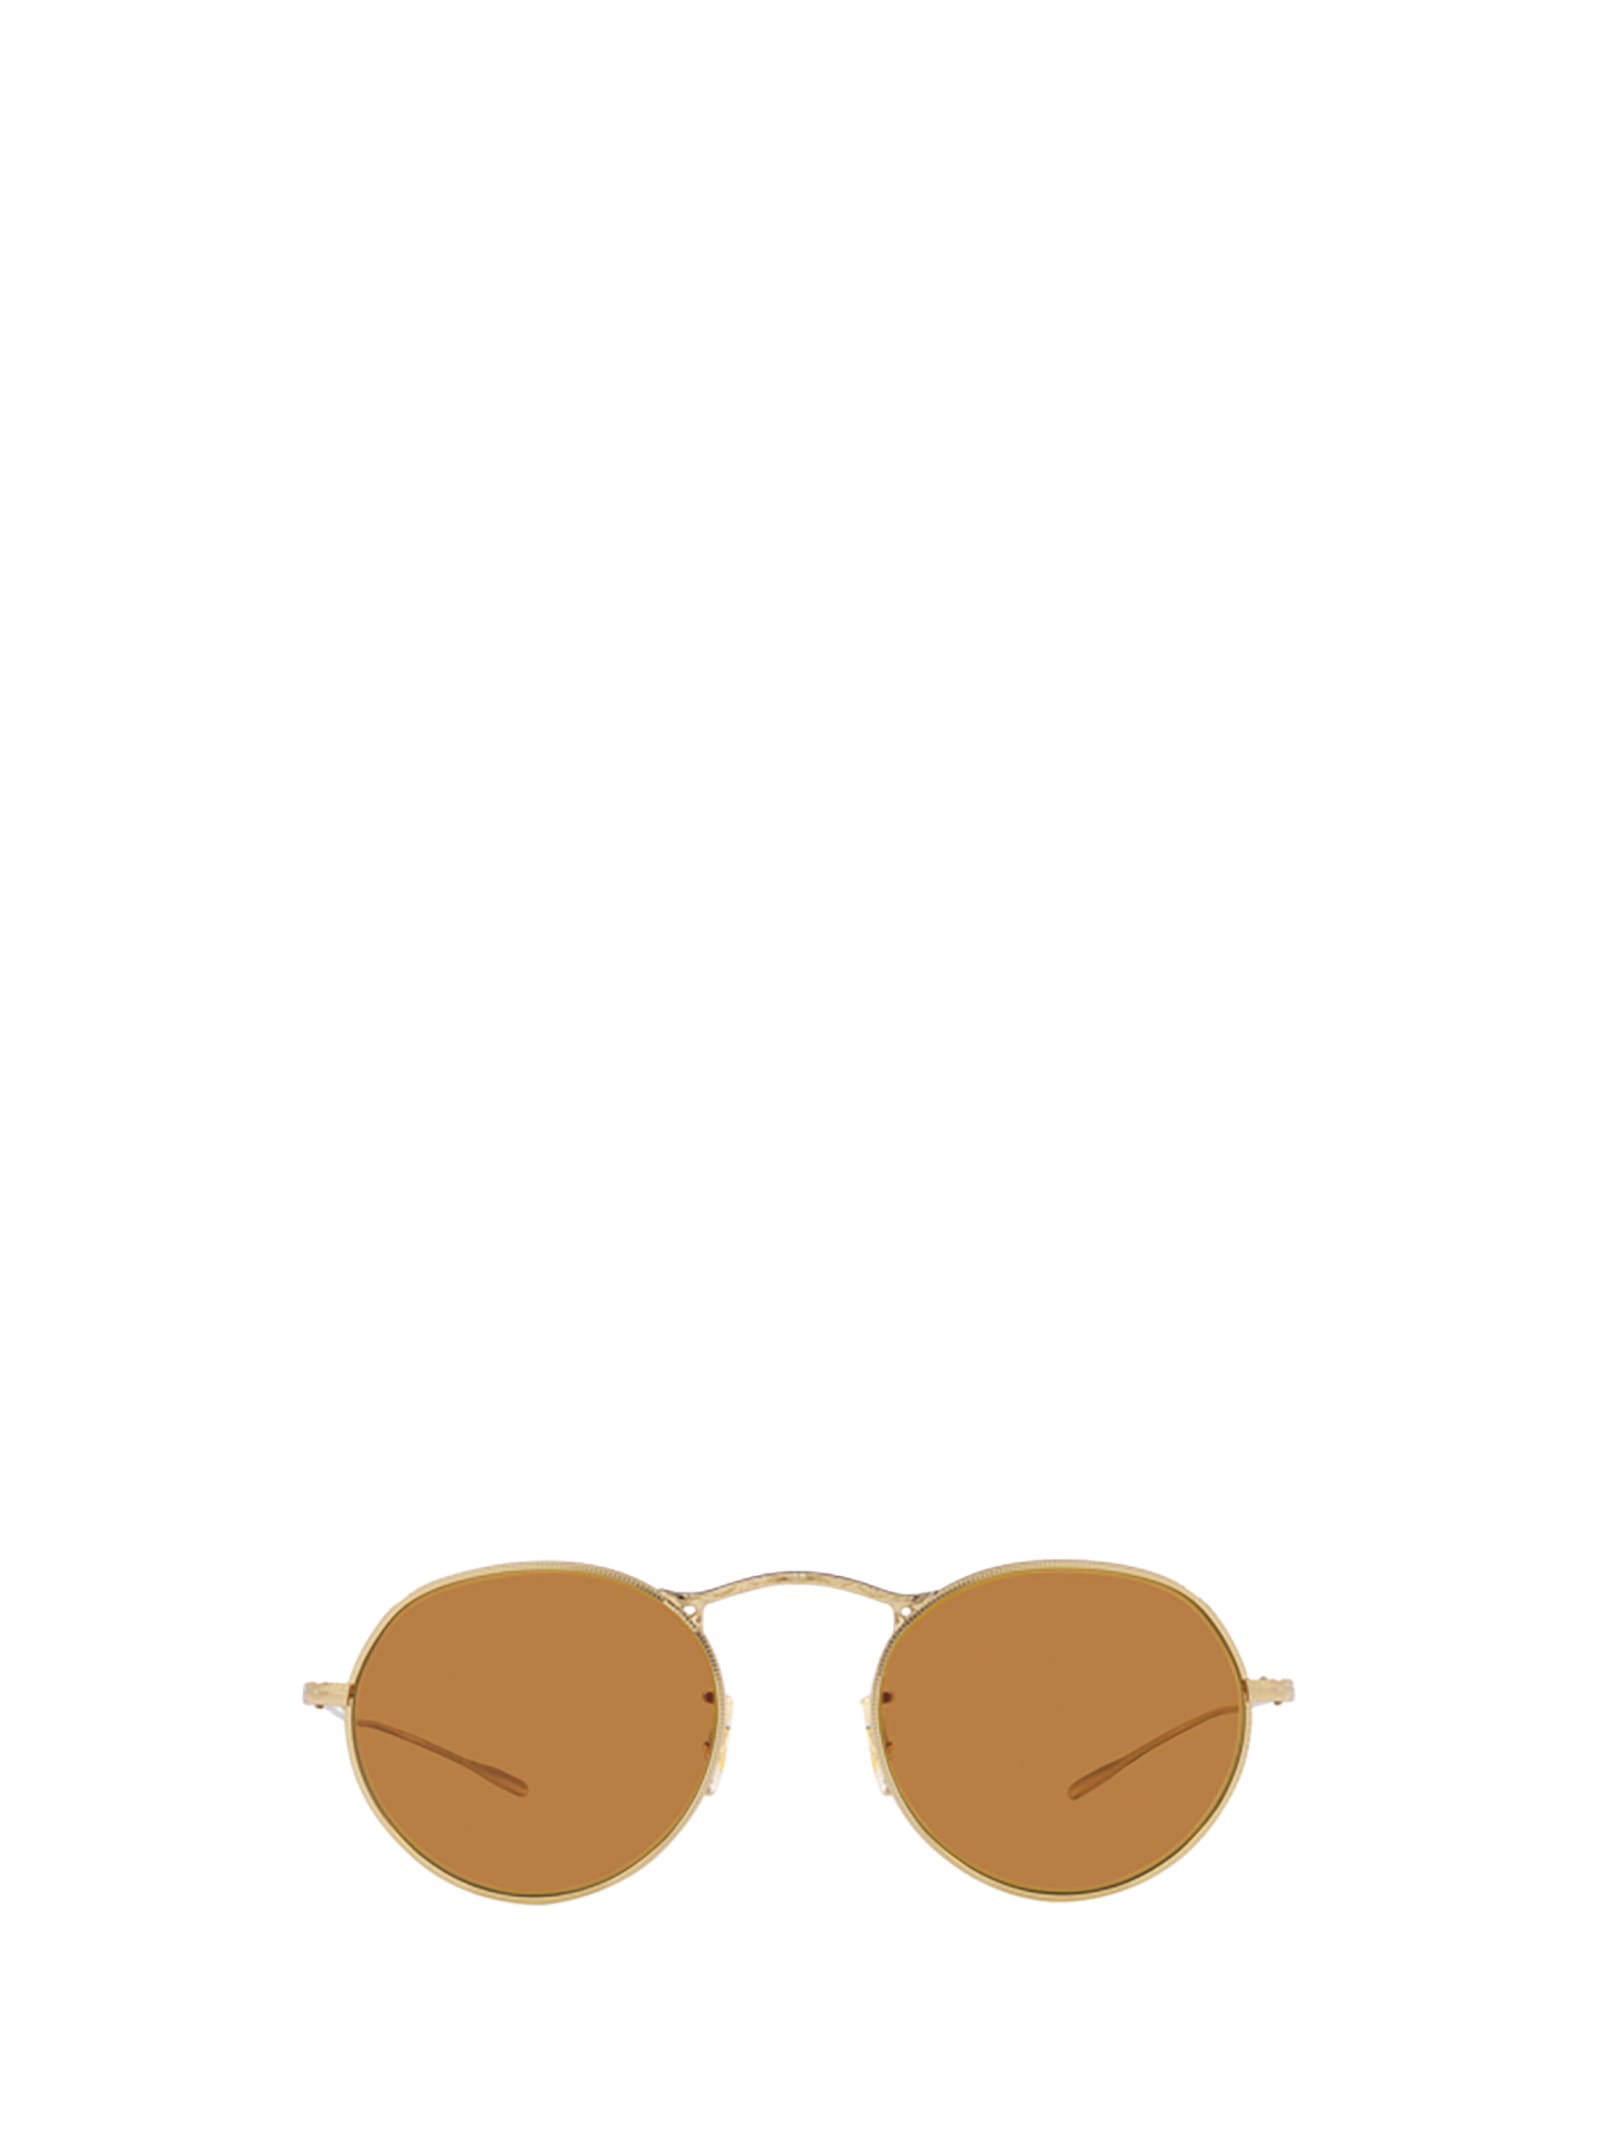 Shop Oliver Peoples Ov1220s Gold Sunglasses